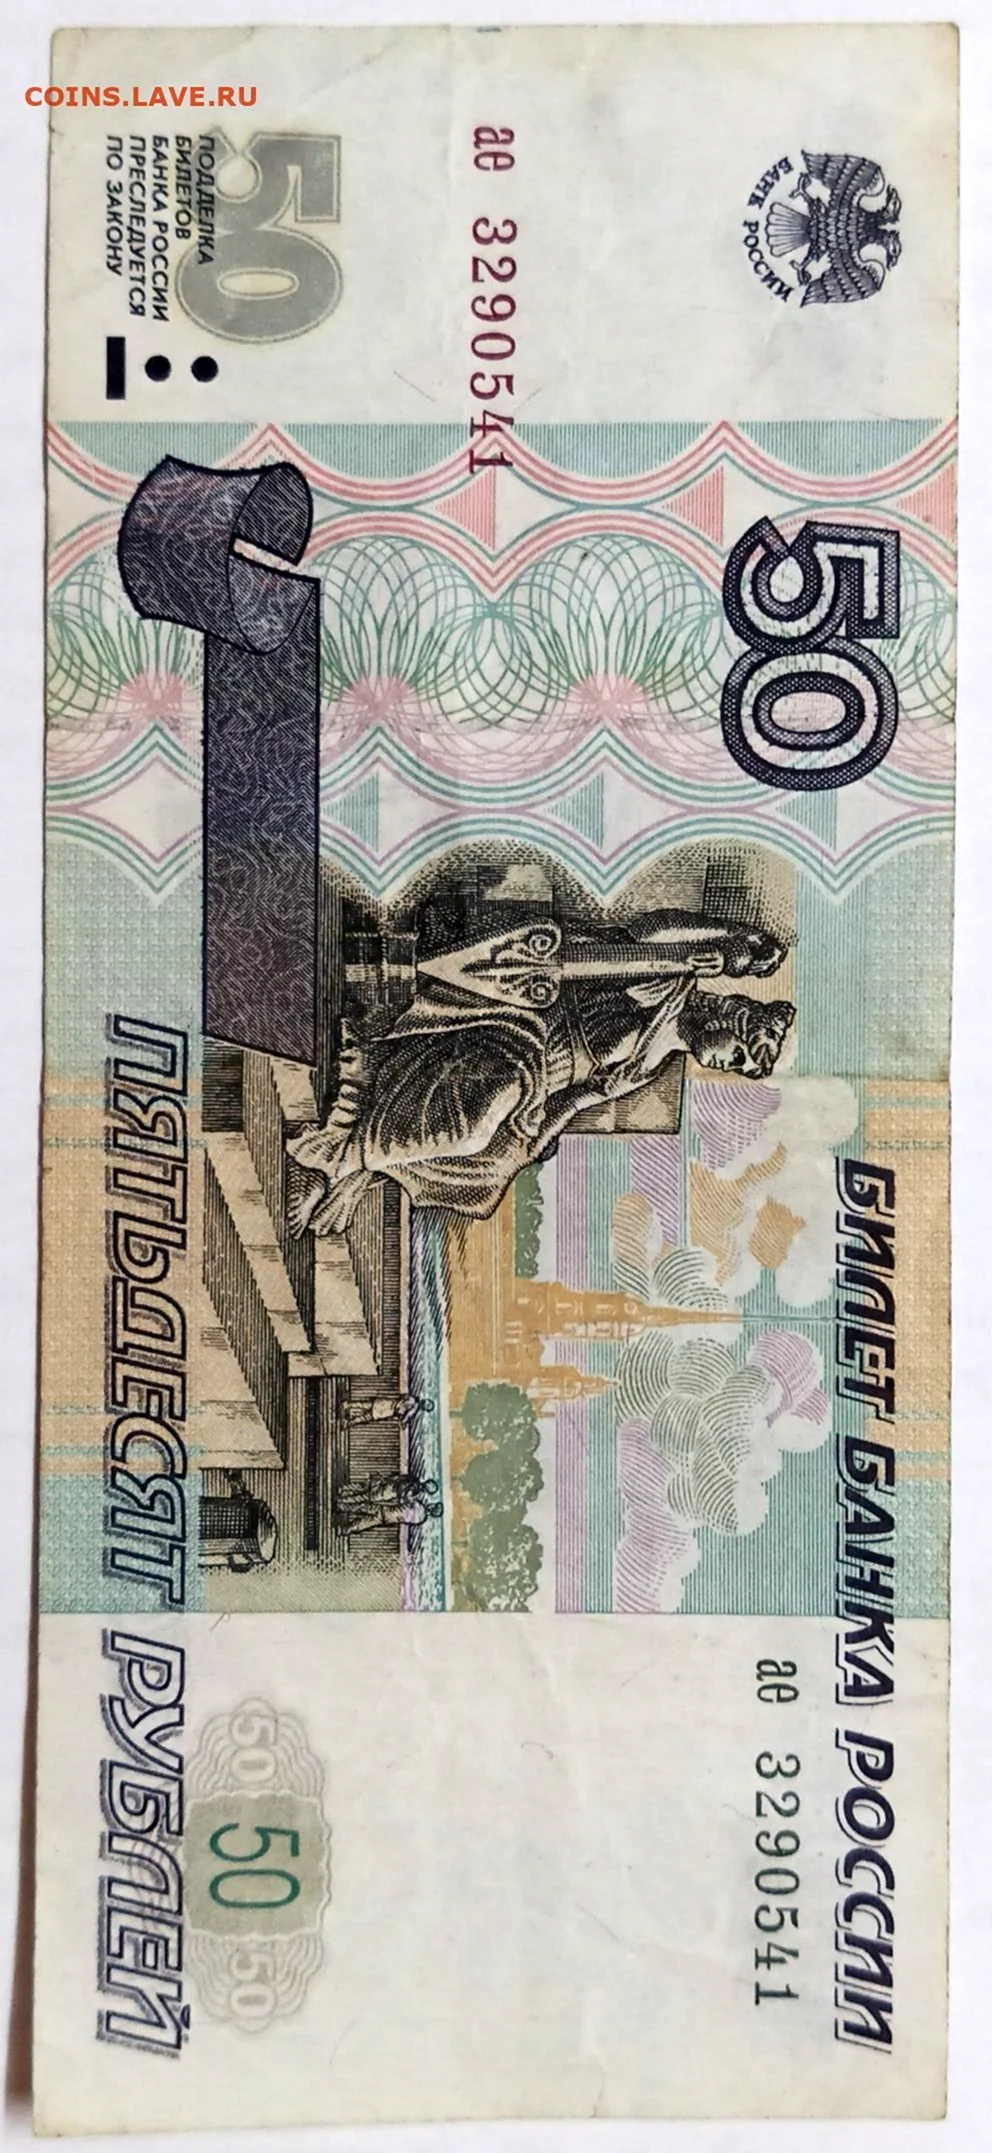 Оригинальные 50 рублей. Картинка